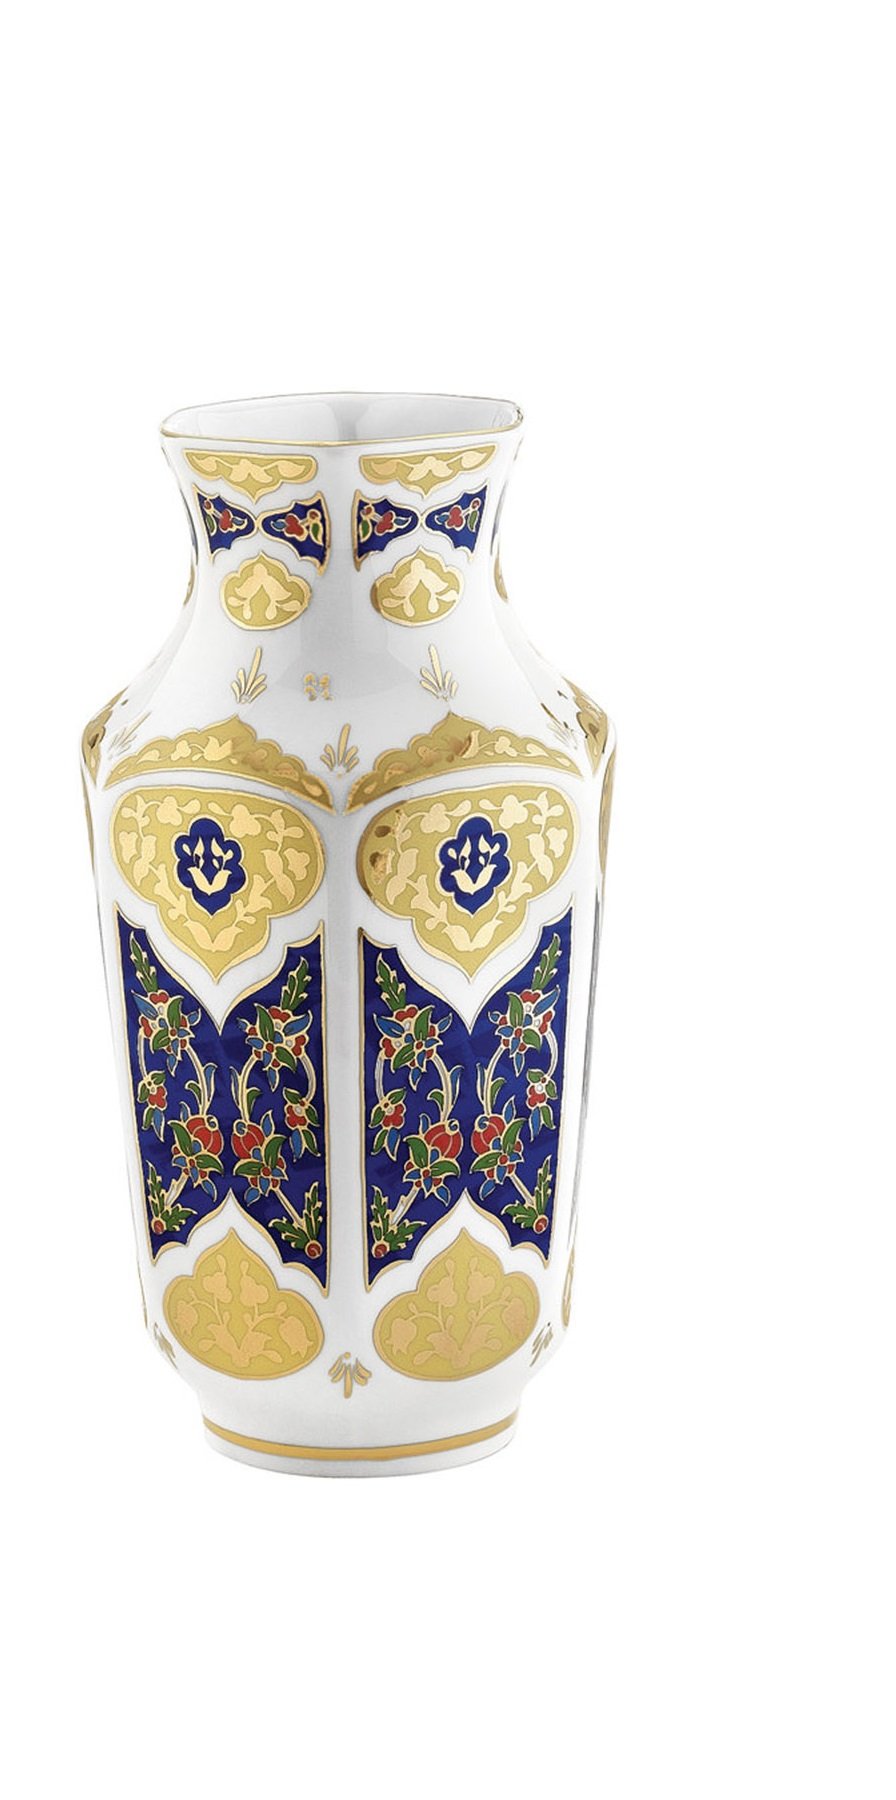 Hand painted porcelain vase, gold blue